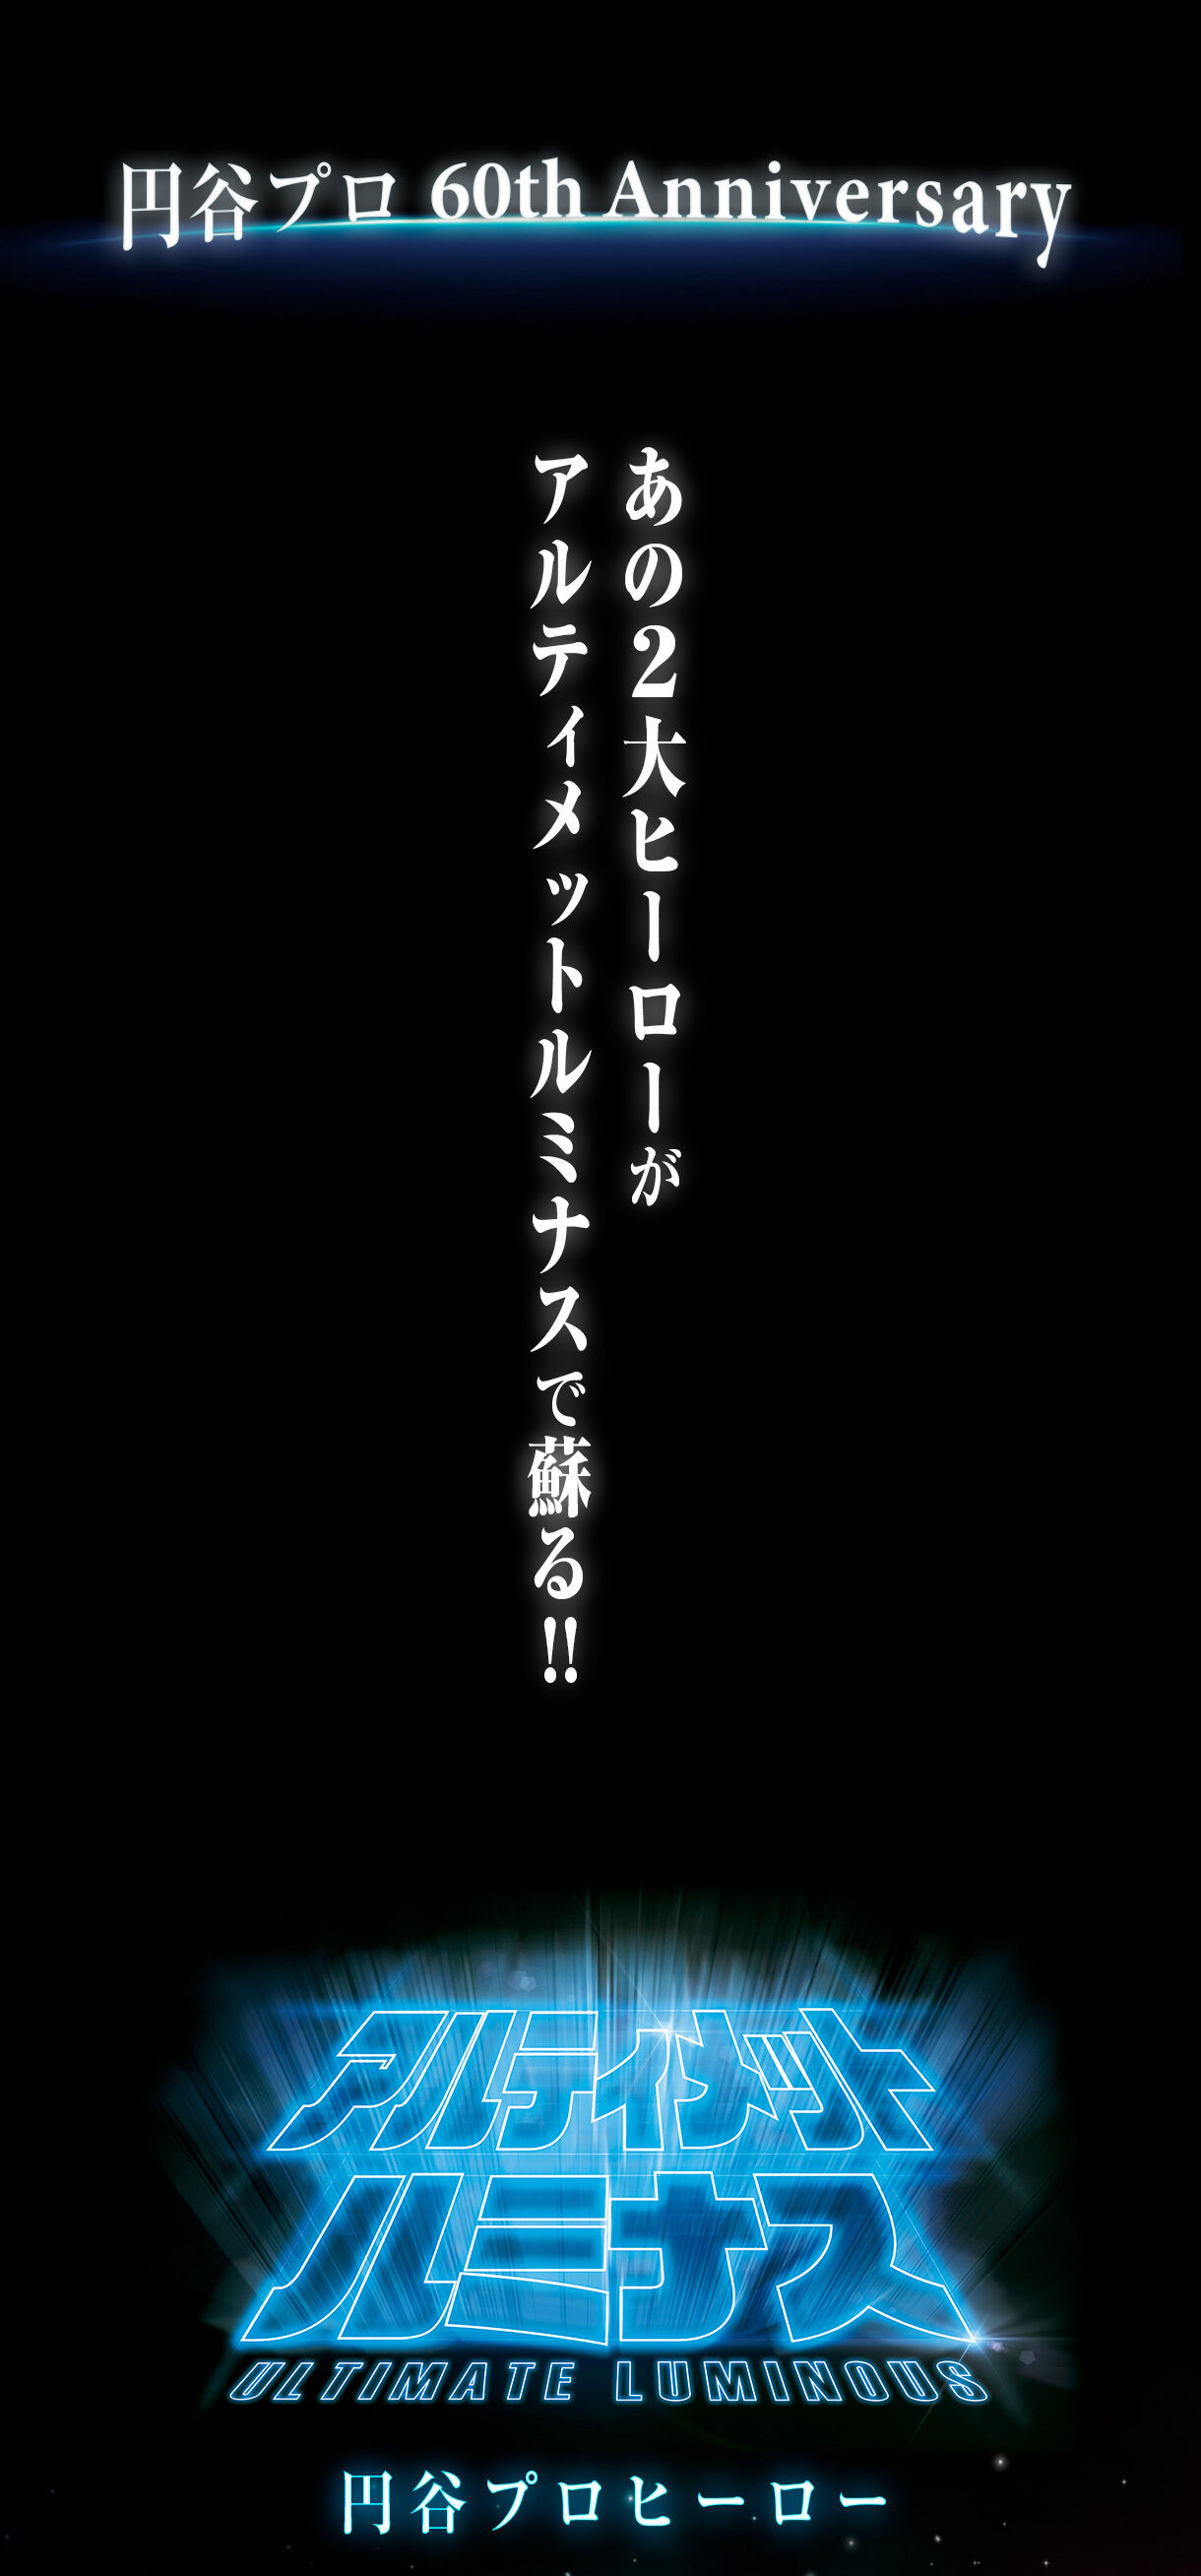 アルティメットルミナス 円谷プロ ヒーロー | ウルトラマンシリーズ 